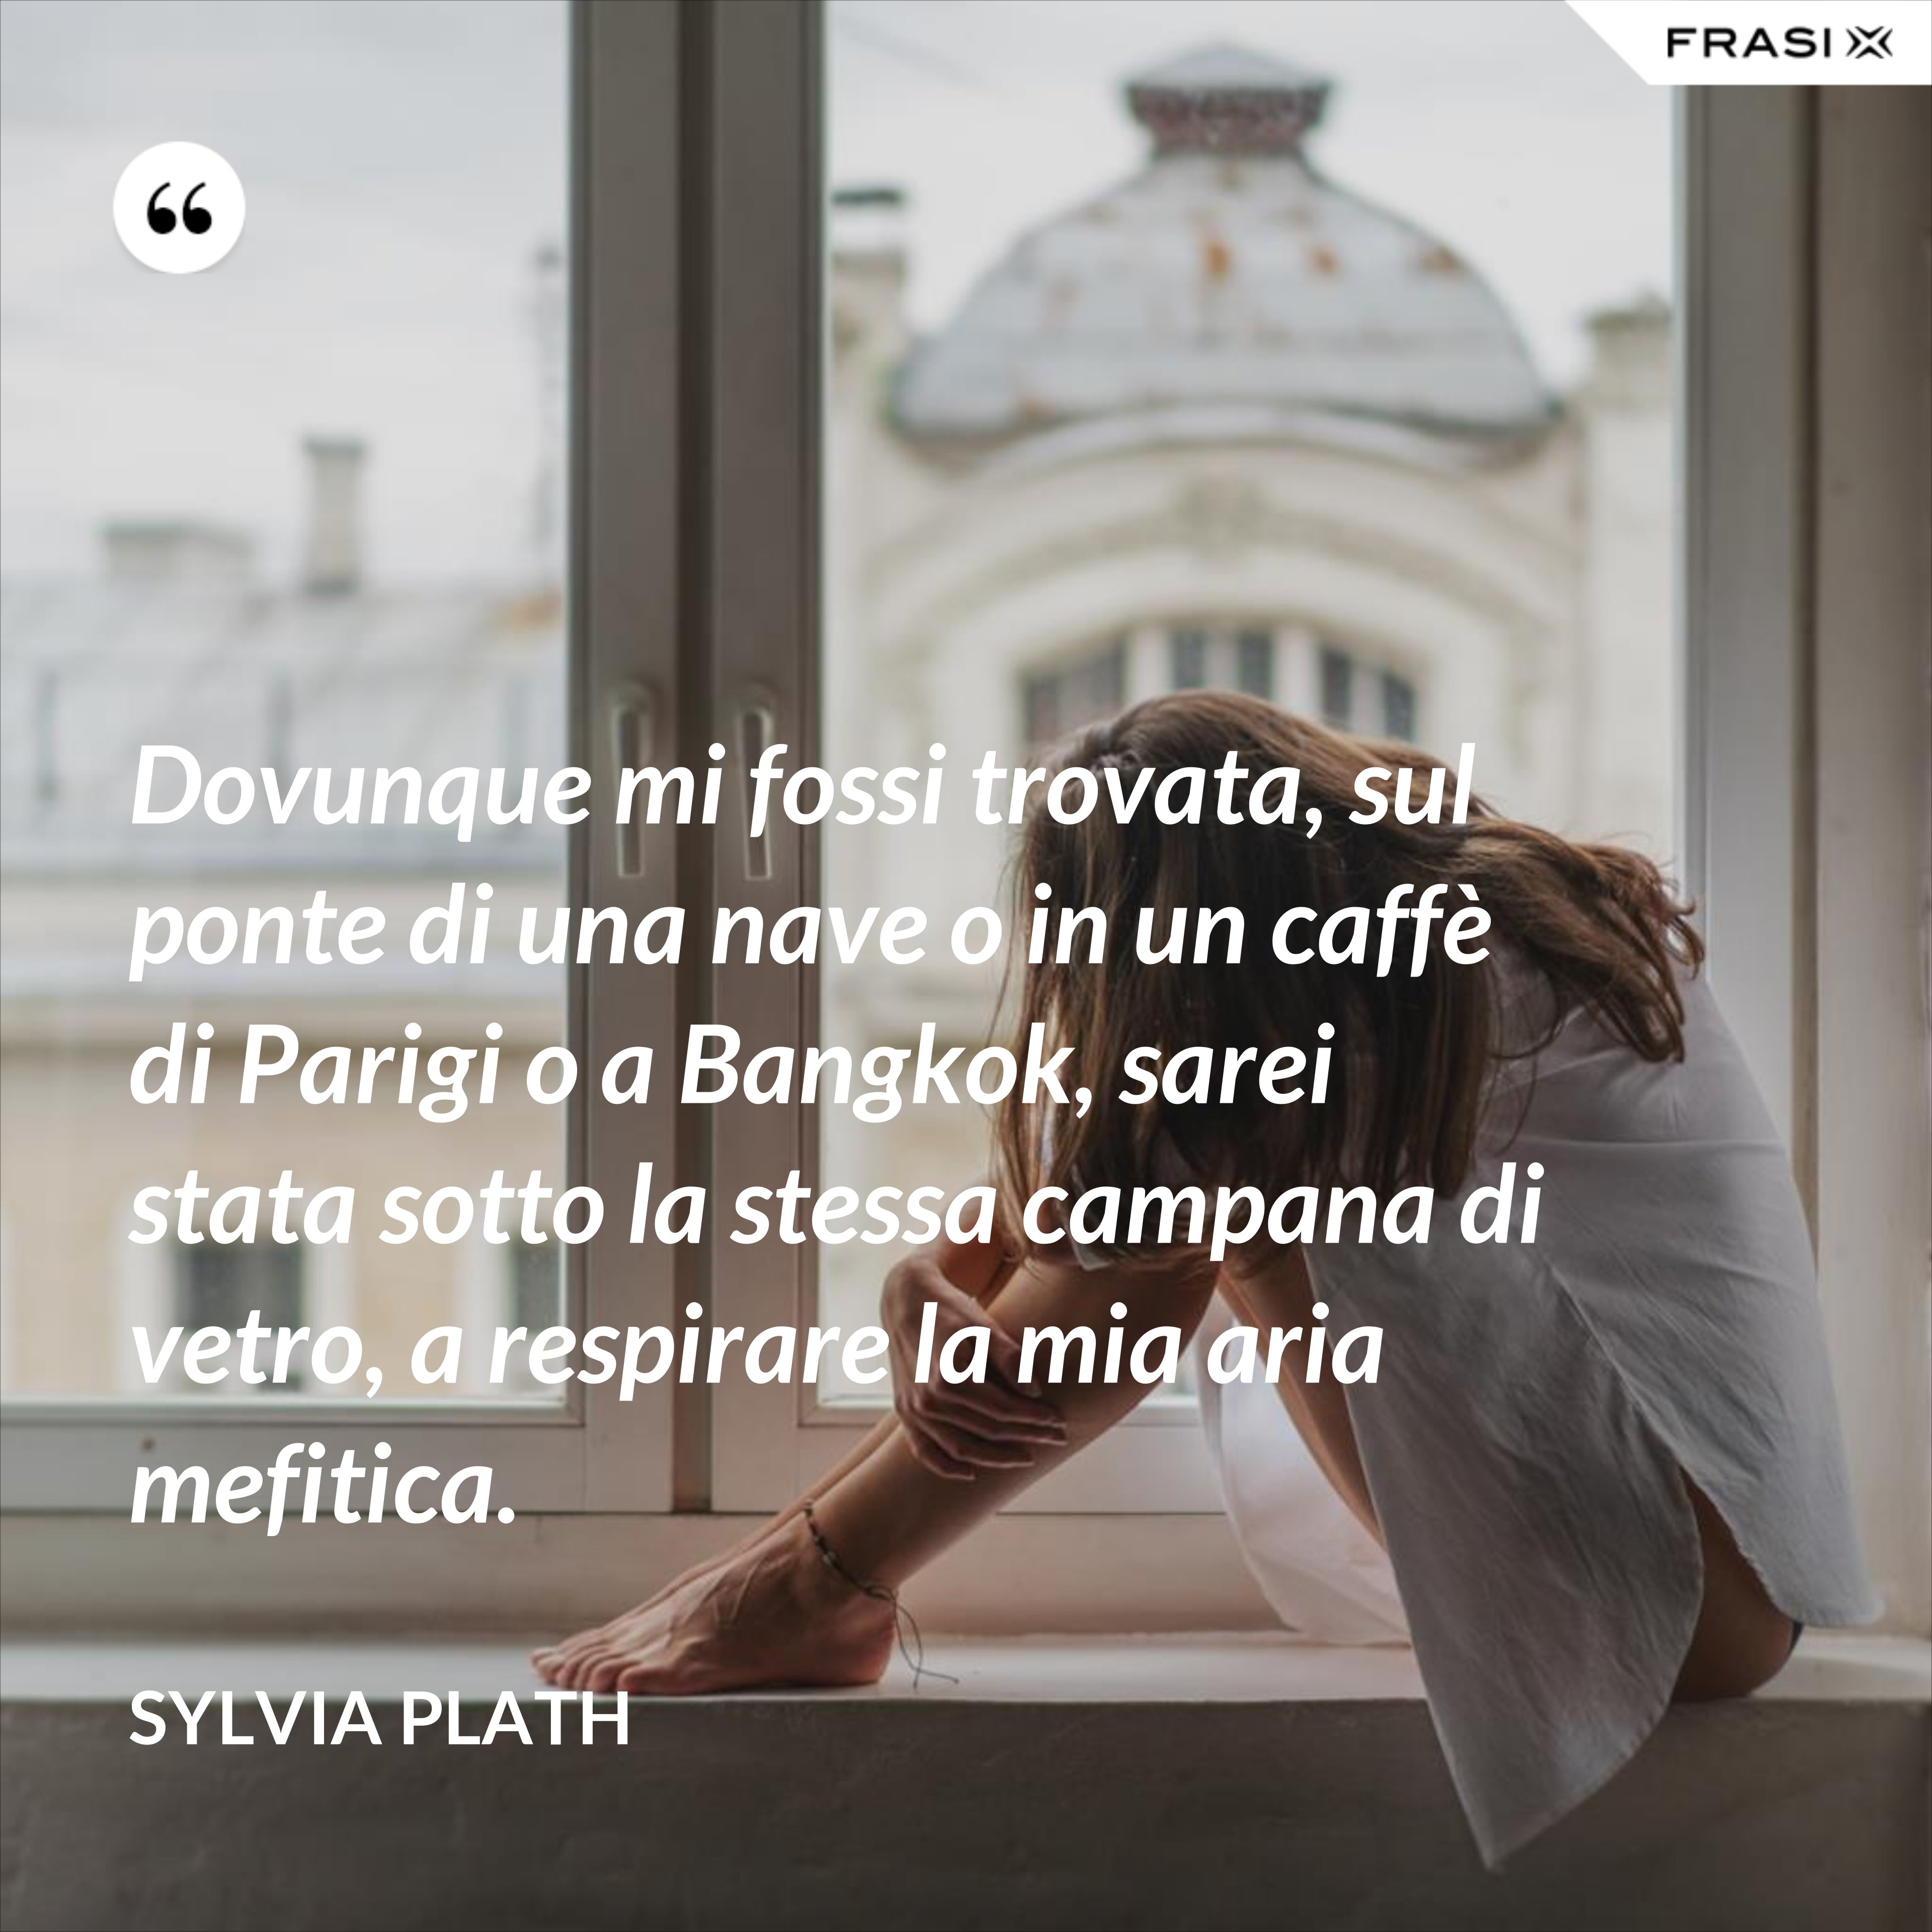 Dovunque mi fossi trovata, sul ponte di una nave o in un caffè di Parigi o a Bangkok, sarei stata sotto la stessa campana di vetro, a respirare la mia aria mefitica. - Sylvia Plath